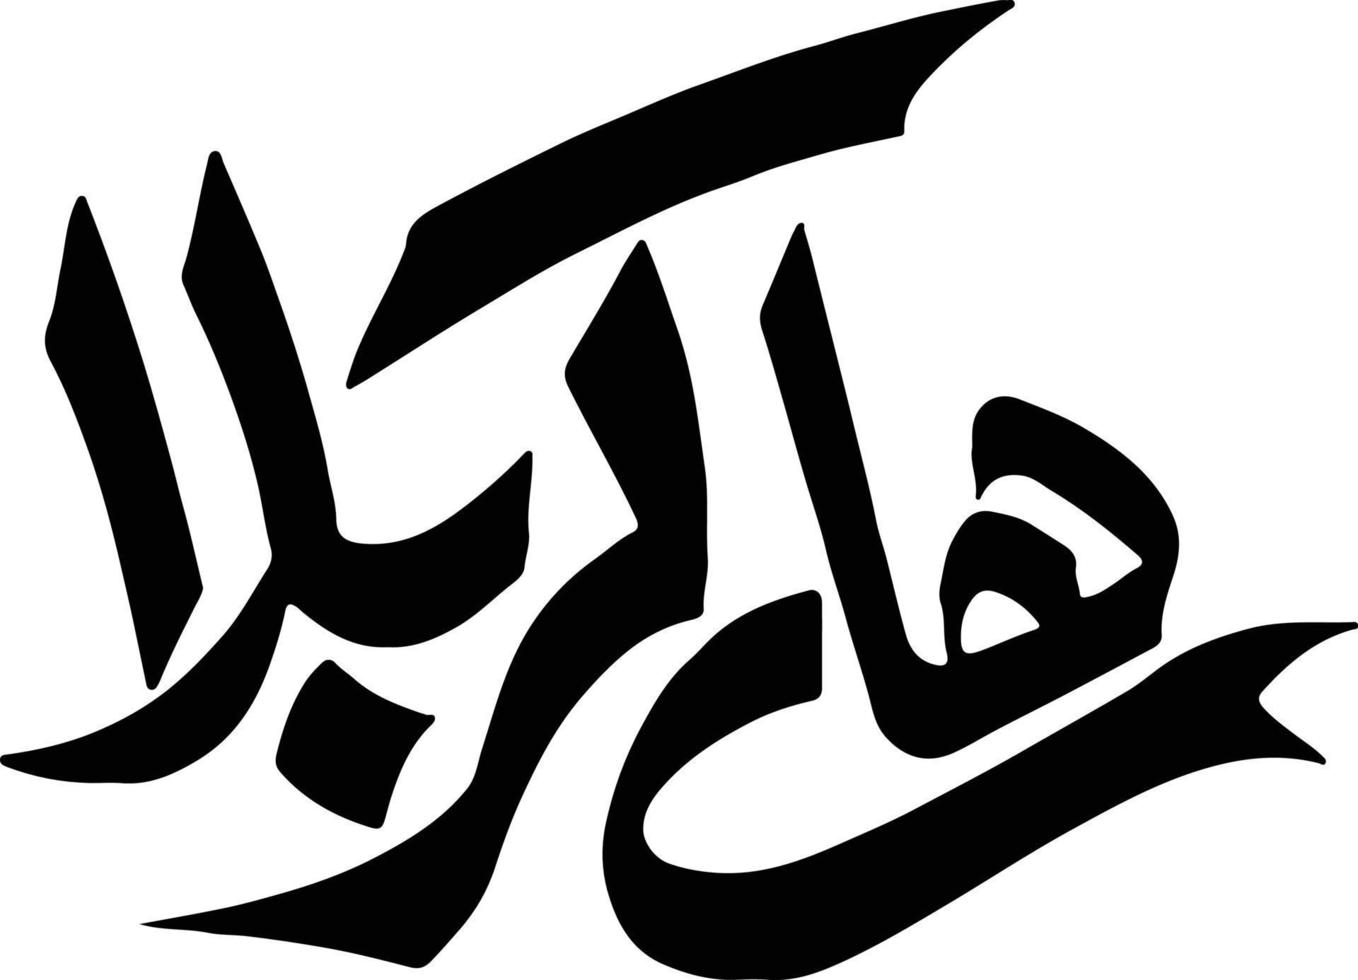 heno karbala título caligrafía islámica vector libre